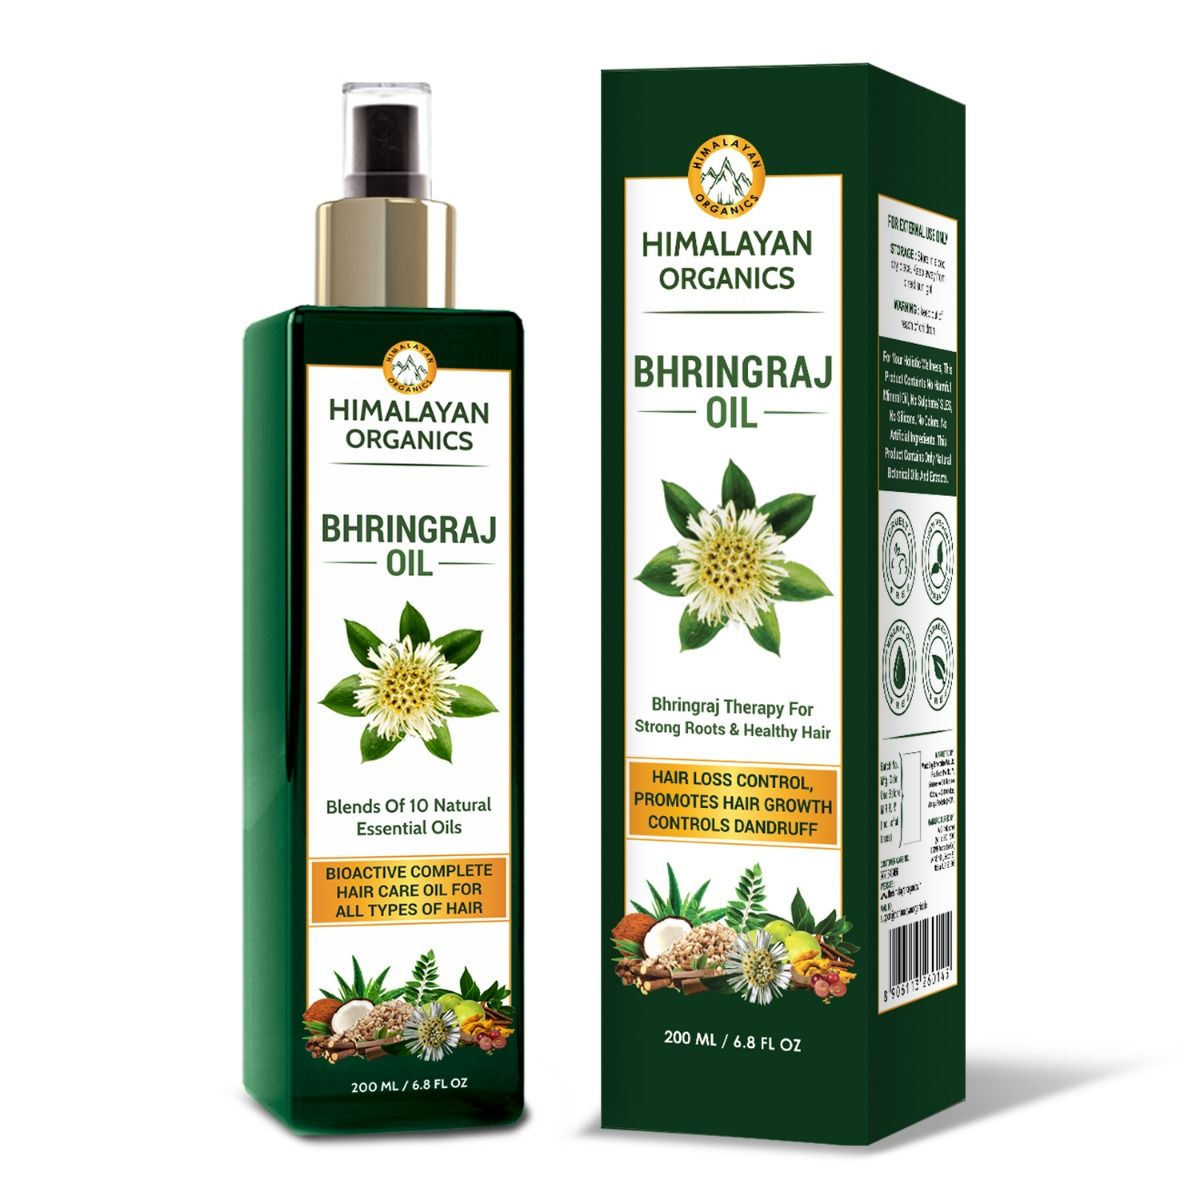 Himalayan Organics Bhringraj Oil, 200 ml, Pack of 1 